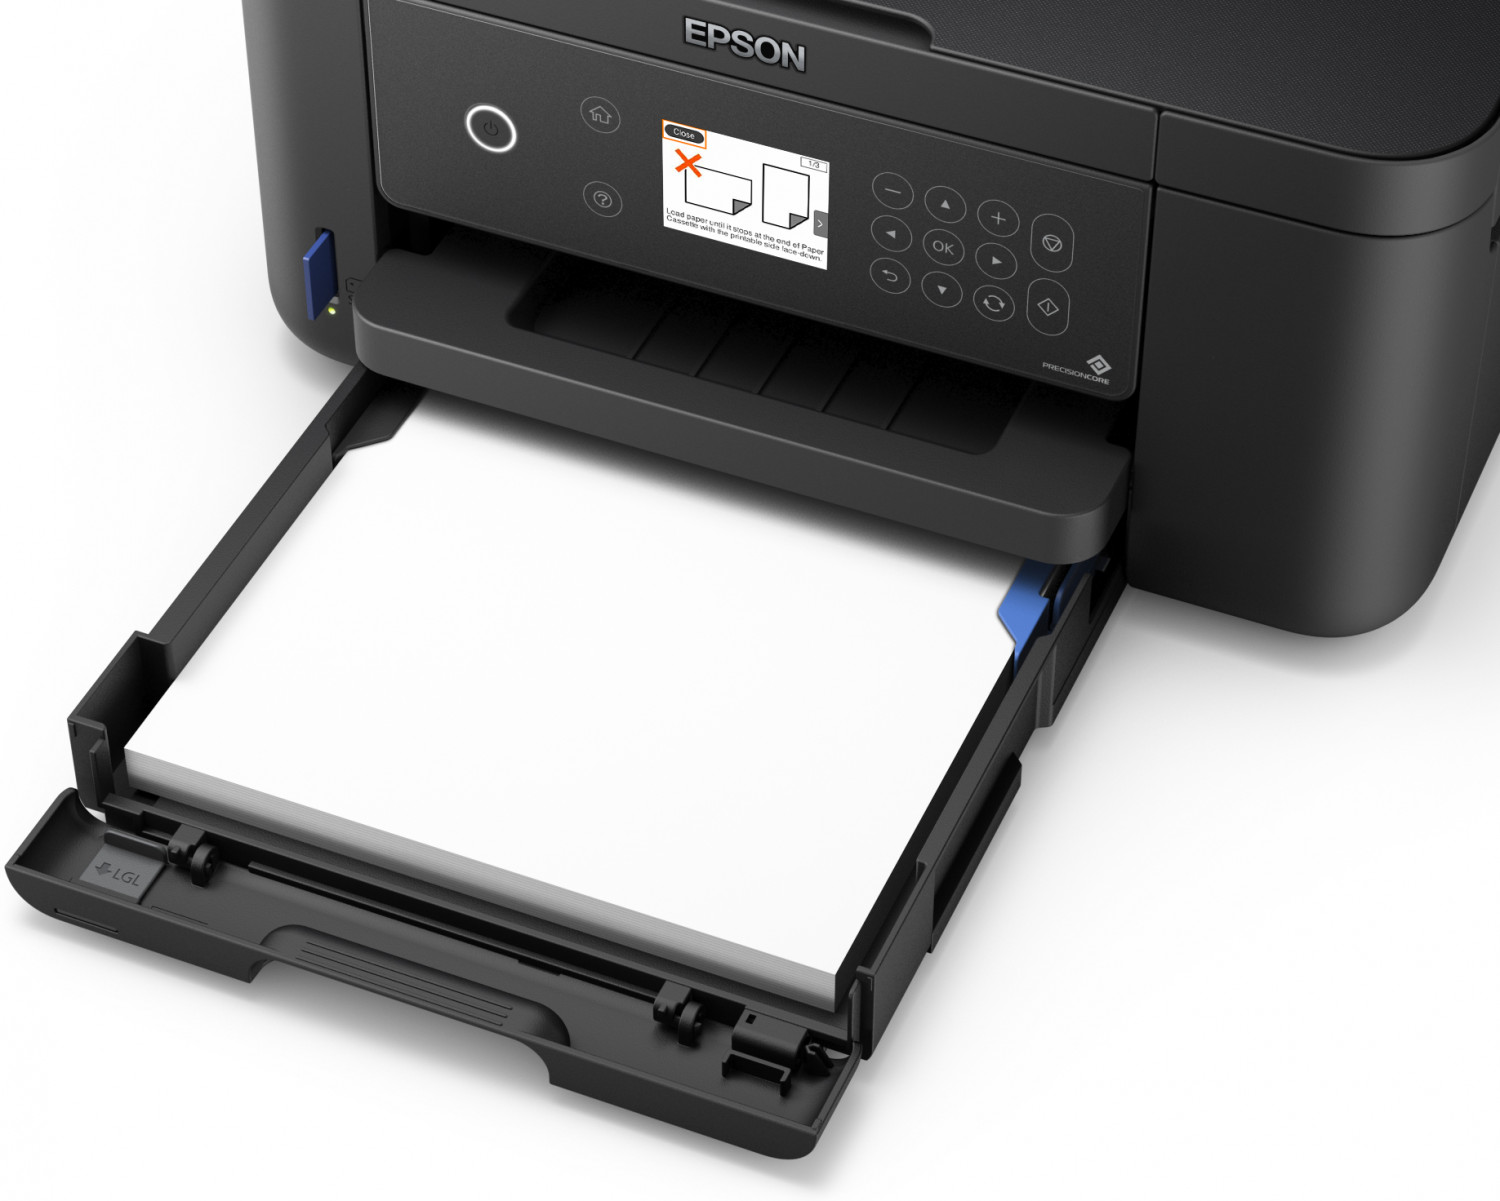 Impresora Epson XP-5100: Multifuncion impresora-copiadora-escaner, dúplex en impresión, Wifi, USB, Impresión móvil, Pantalla a color, bandeja posterior hasta 100 paginas, 33 pg/min Monocromo, 15 pg/min Color, nueva, Ecotank Dye reformada a L6160